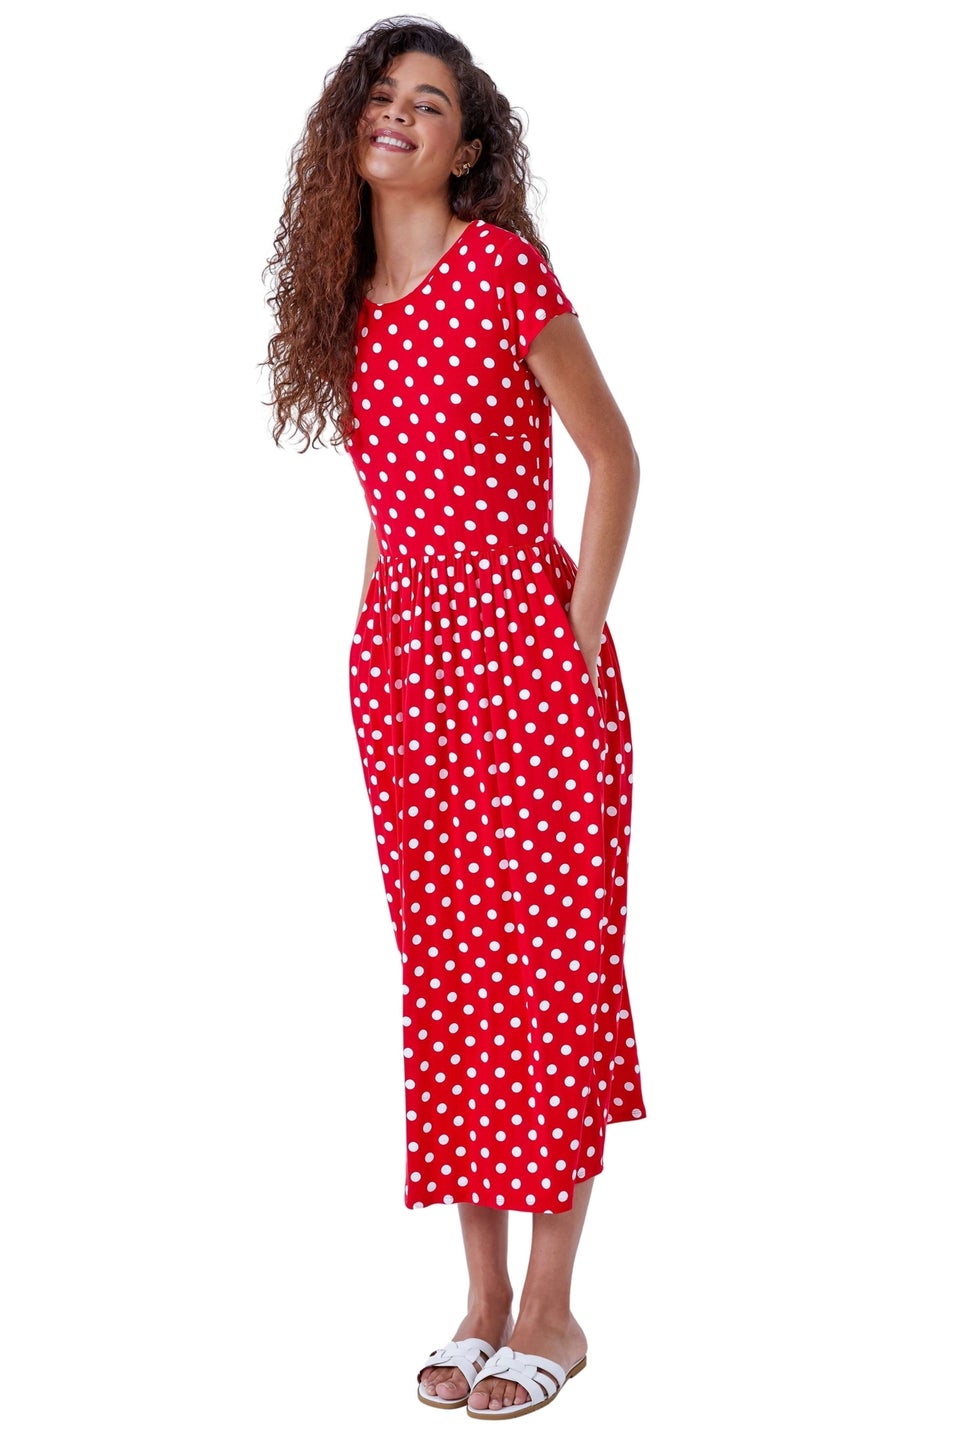 Roman Red Stretch Jersey Spot Midi Dress